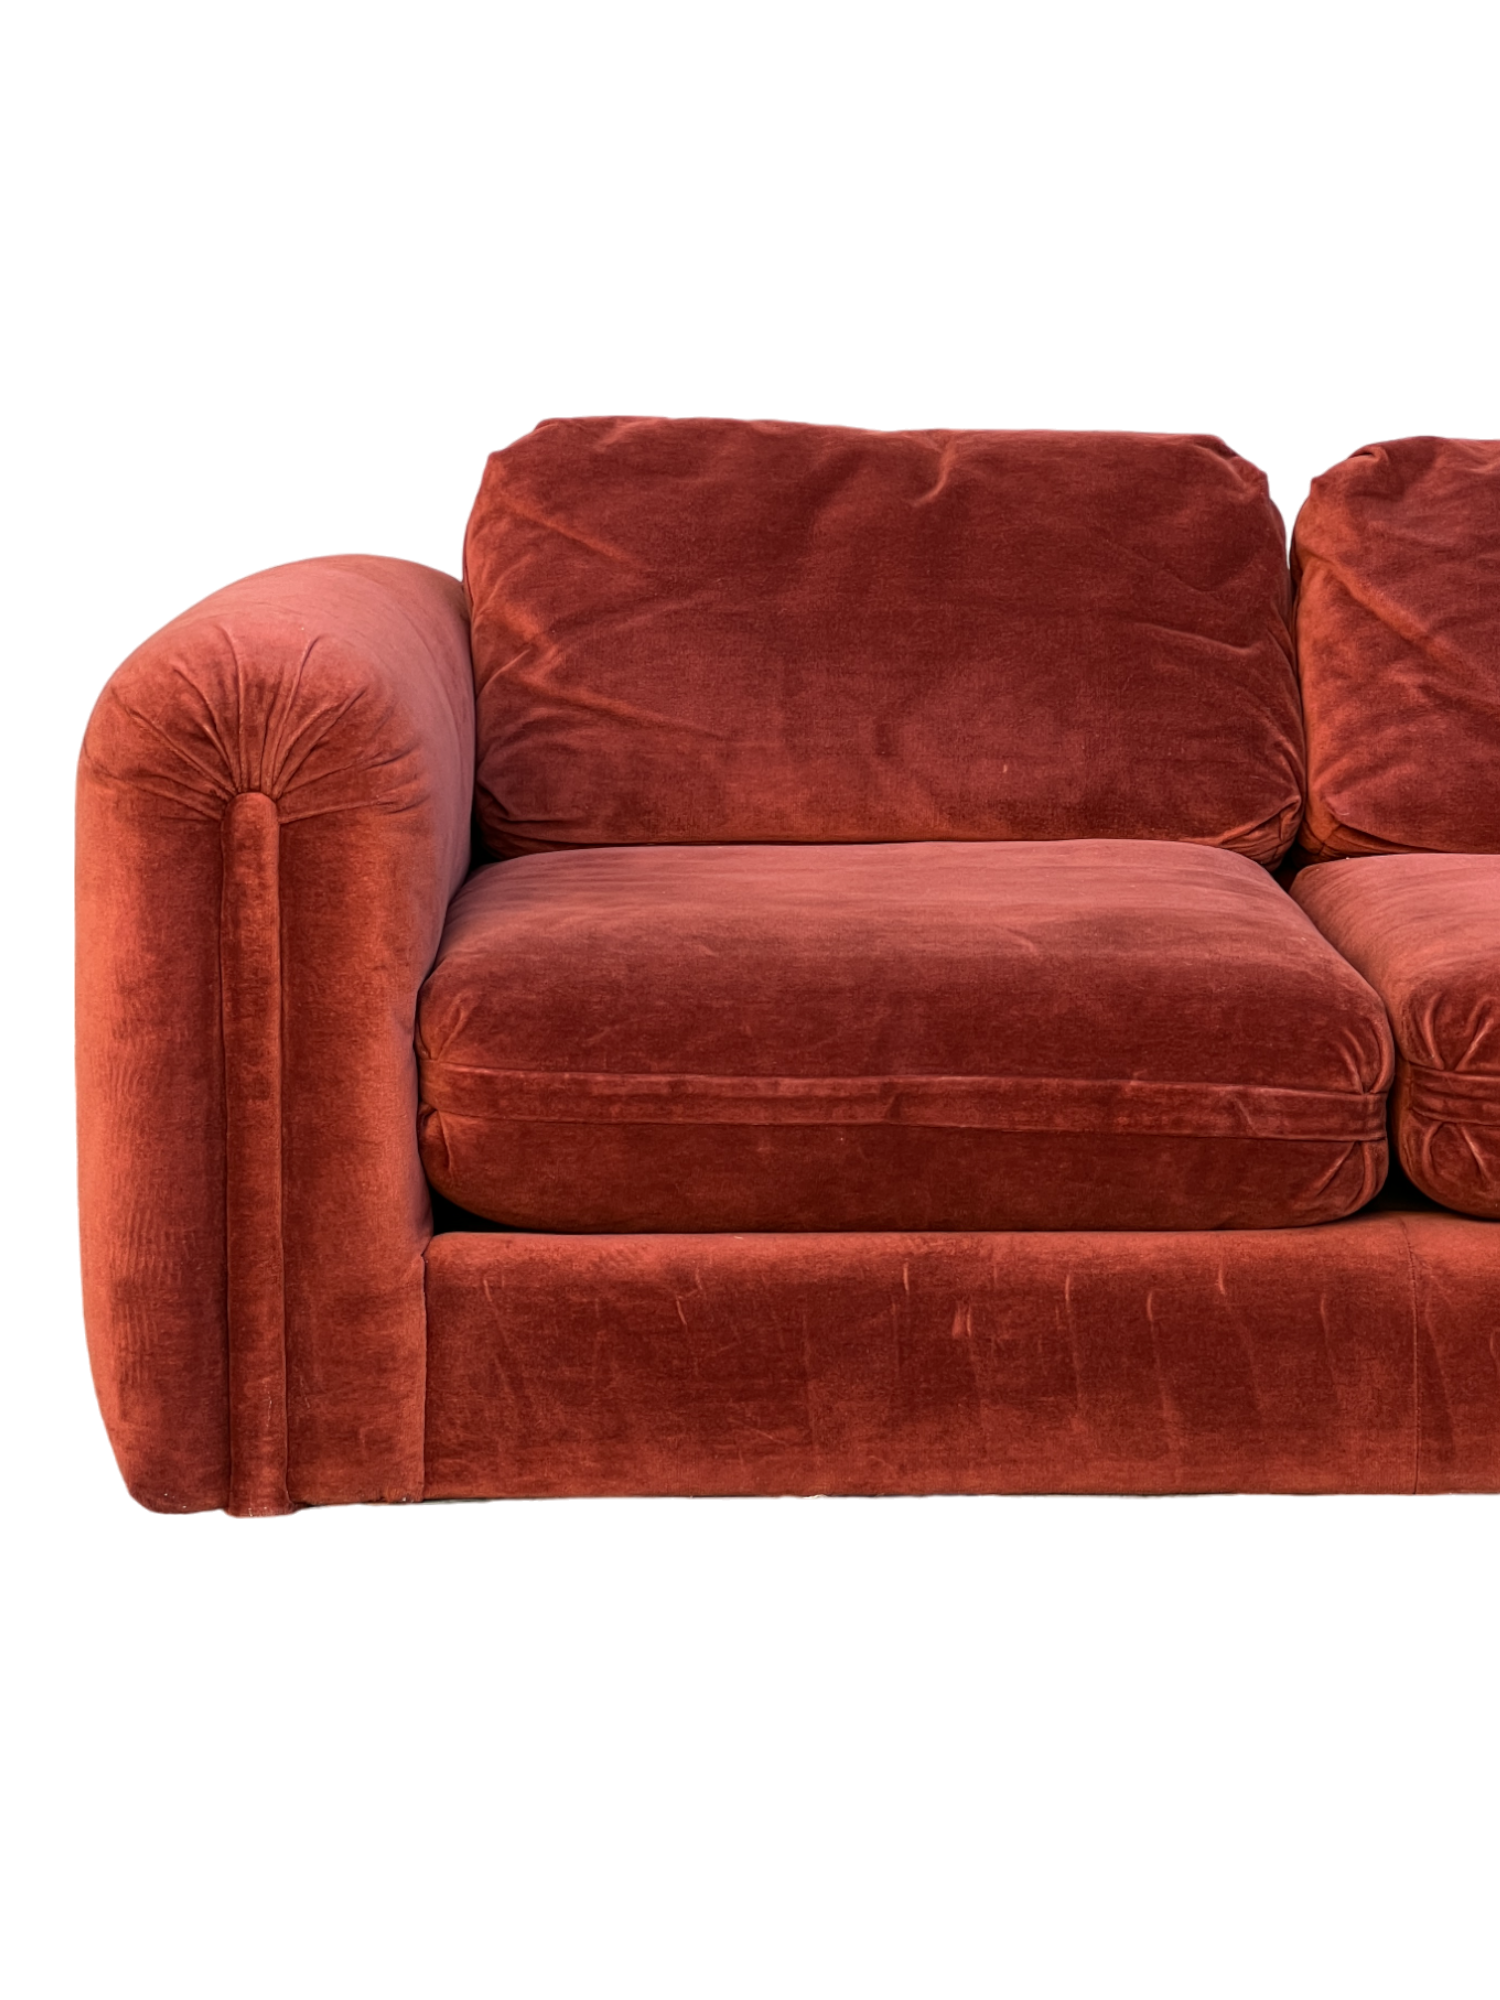 1970s Red-Orange Sofa